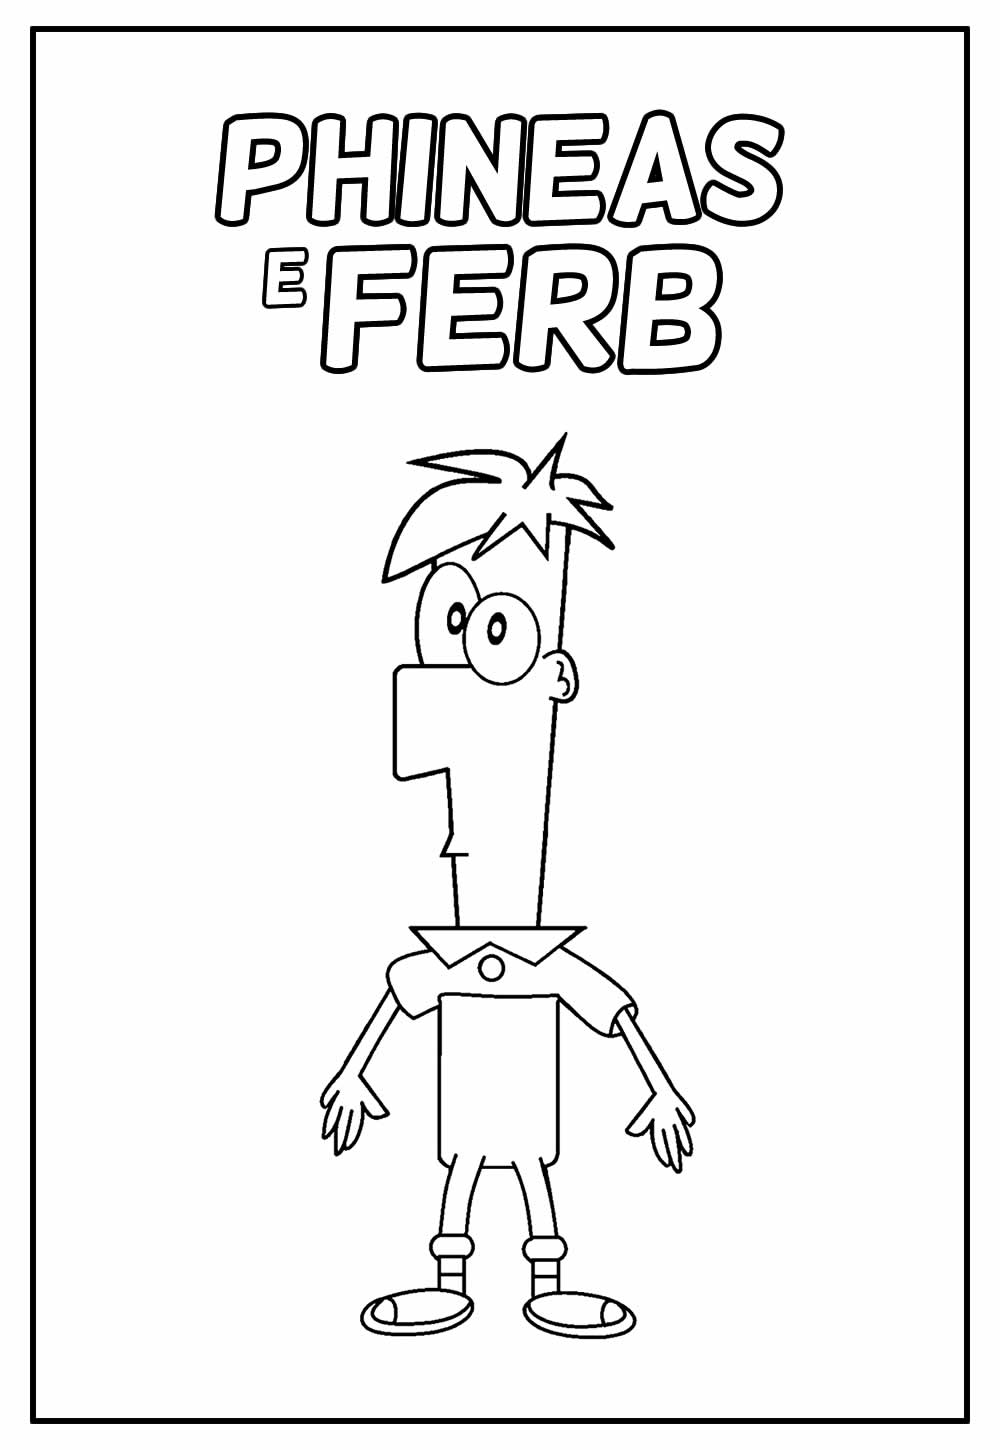 Desenho Educativo de Phineas e Ferb para colorir